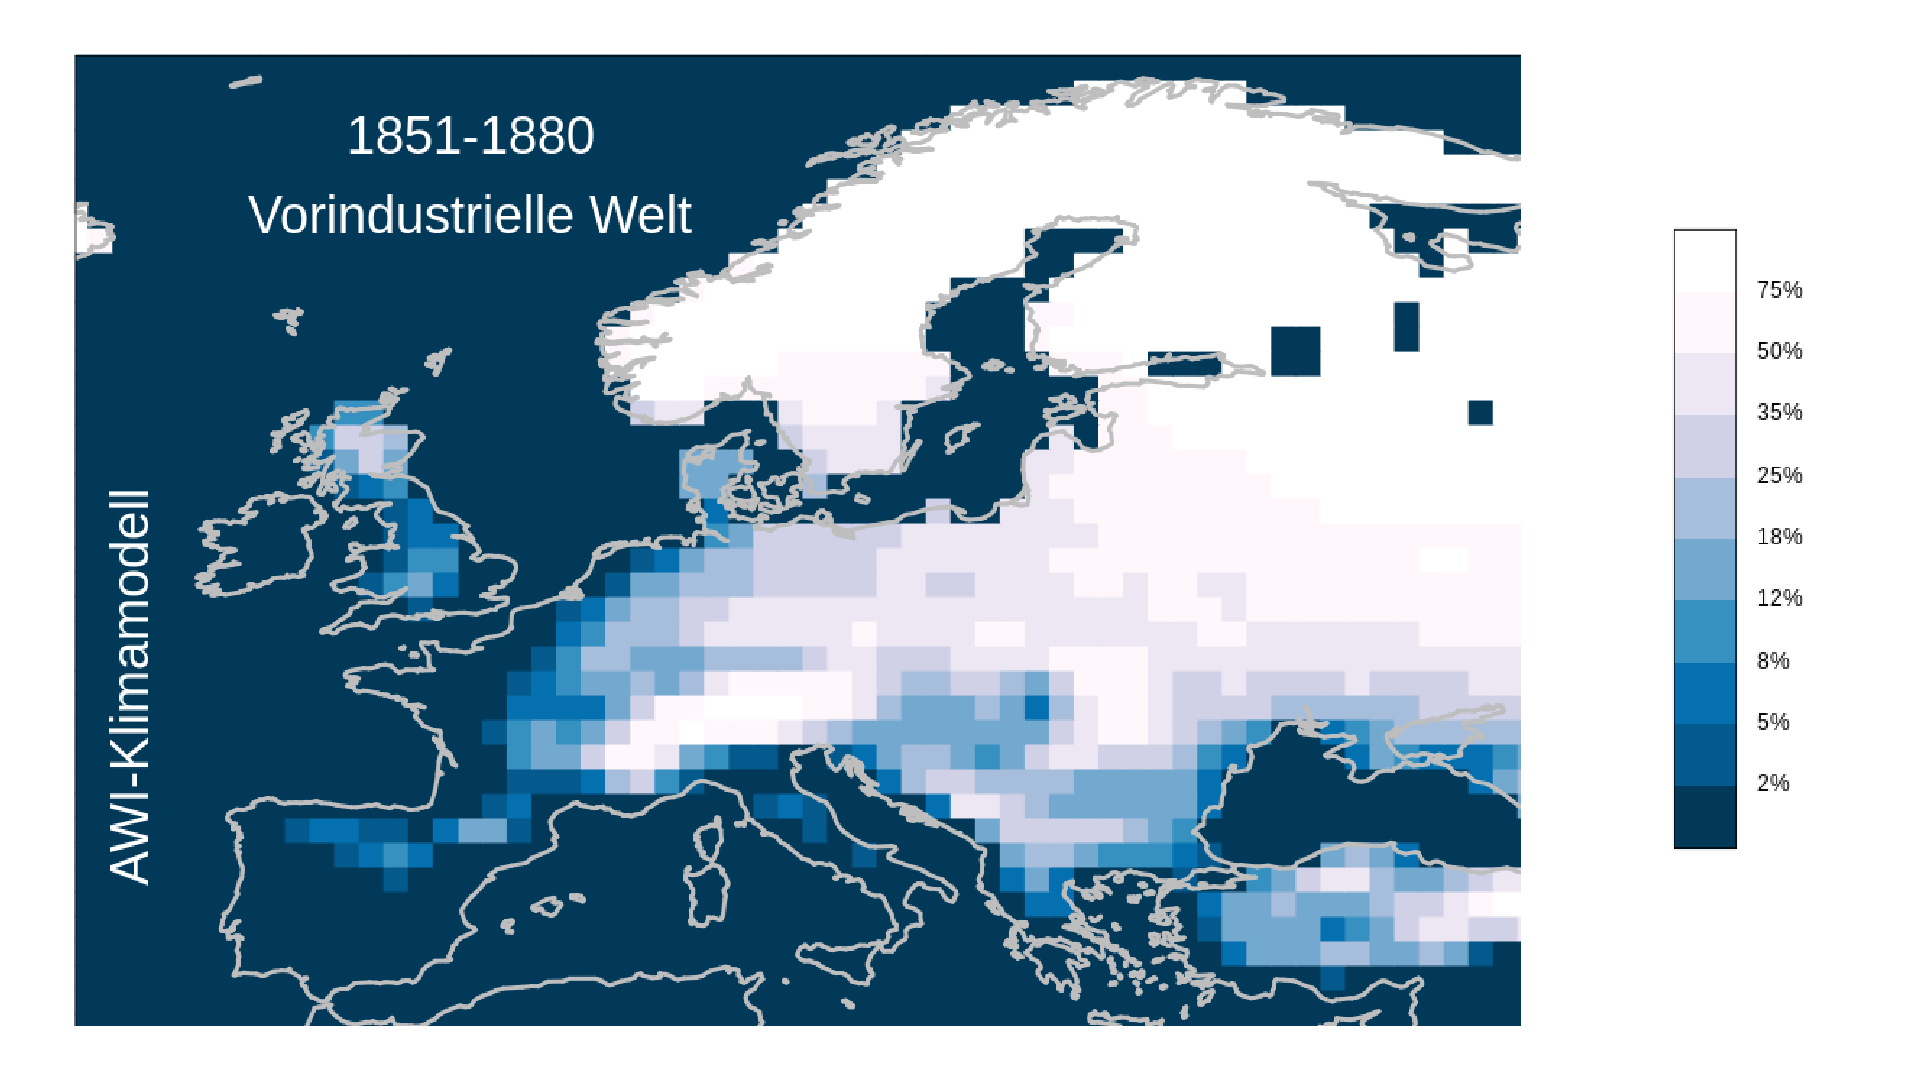 Karte von Europa, die auf einer Farbskala von Weiß bis Blau zeigt, welche Wahrscheinlichkeiten im Modell für Schnee vor der Industrialisierung bestanden